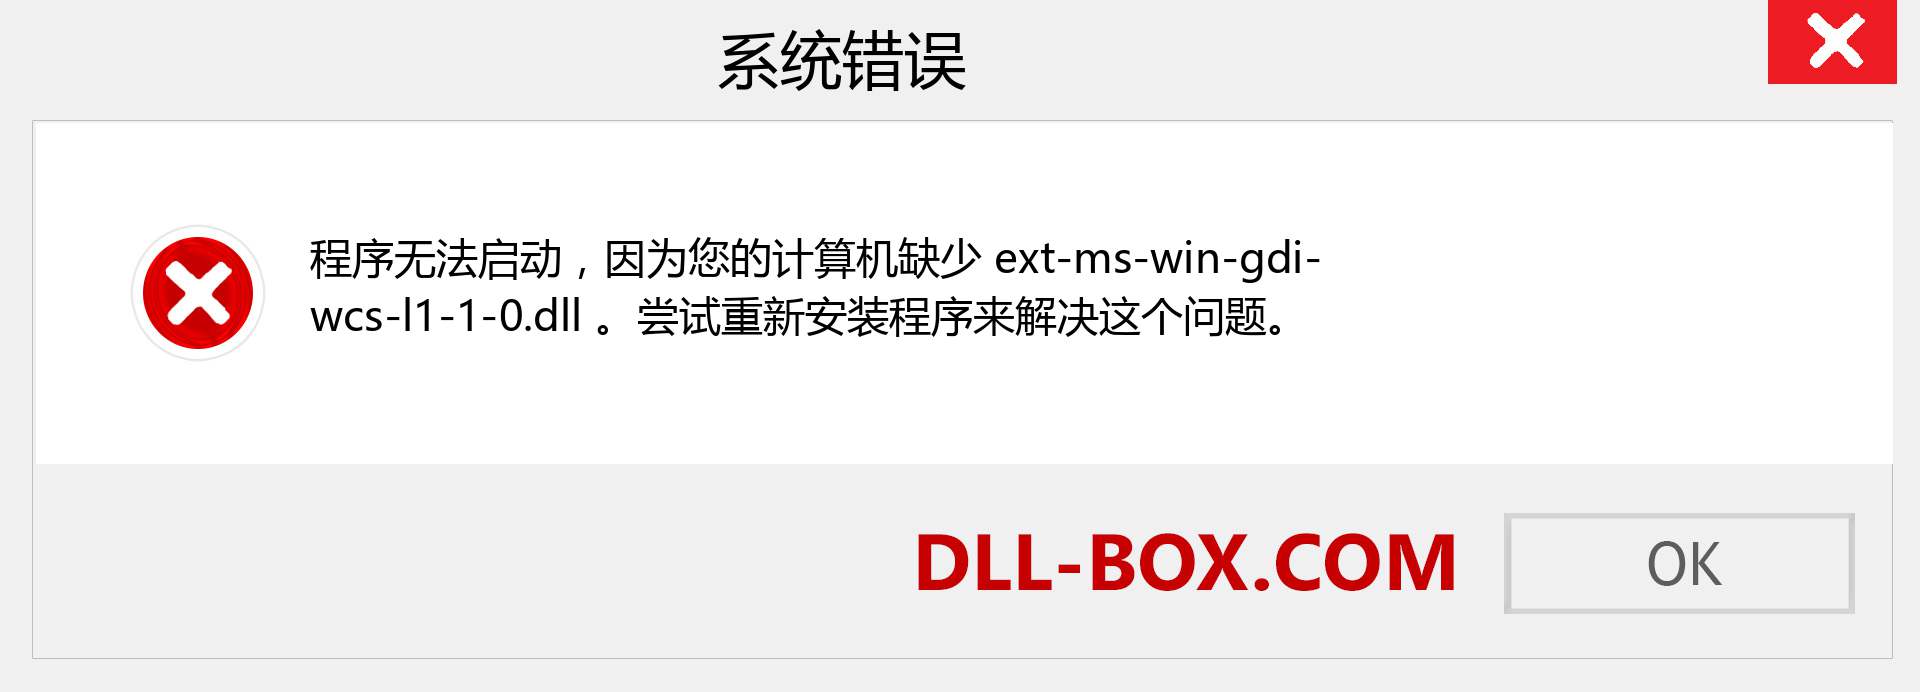 ext-ms-win-gdi-wcs-l1-1-0.dll 文件丢失？。 适用于 Windows 7、8、10 的下载 - 修复 Windows、照片、图像上的 ext-ms-win-gdi-wcs-l1-1-0 dll 丢失错误